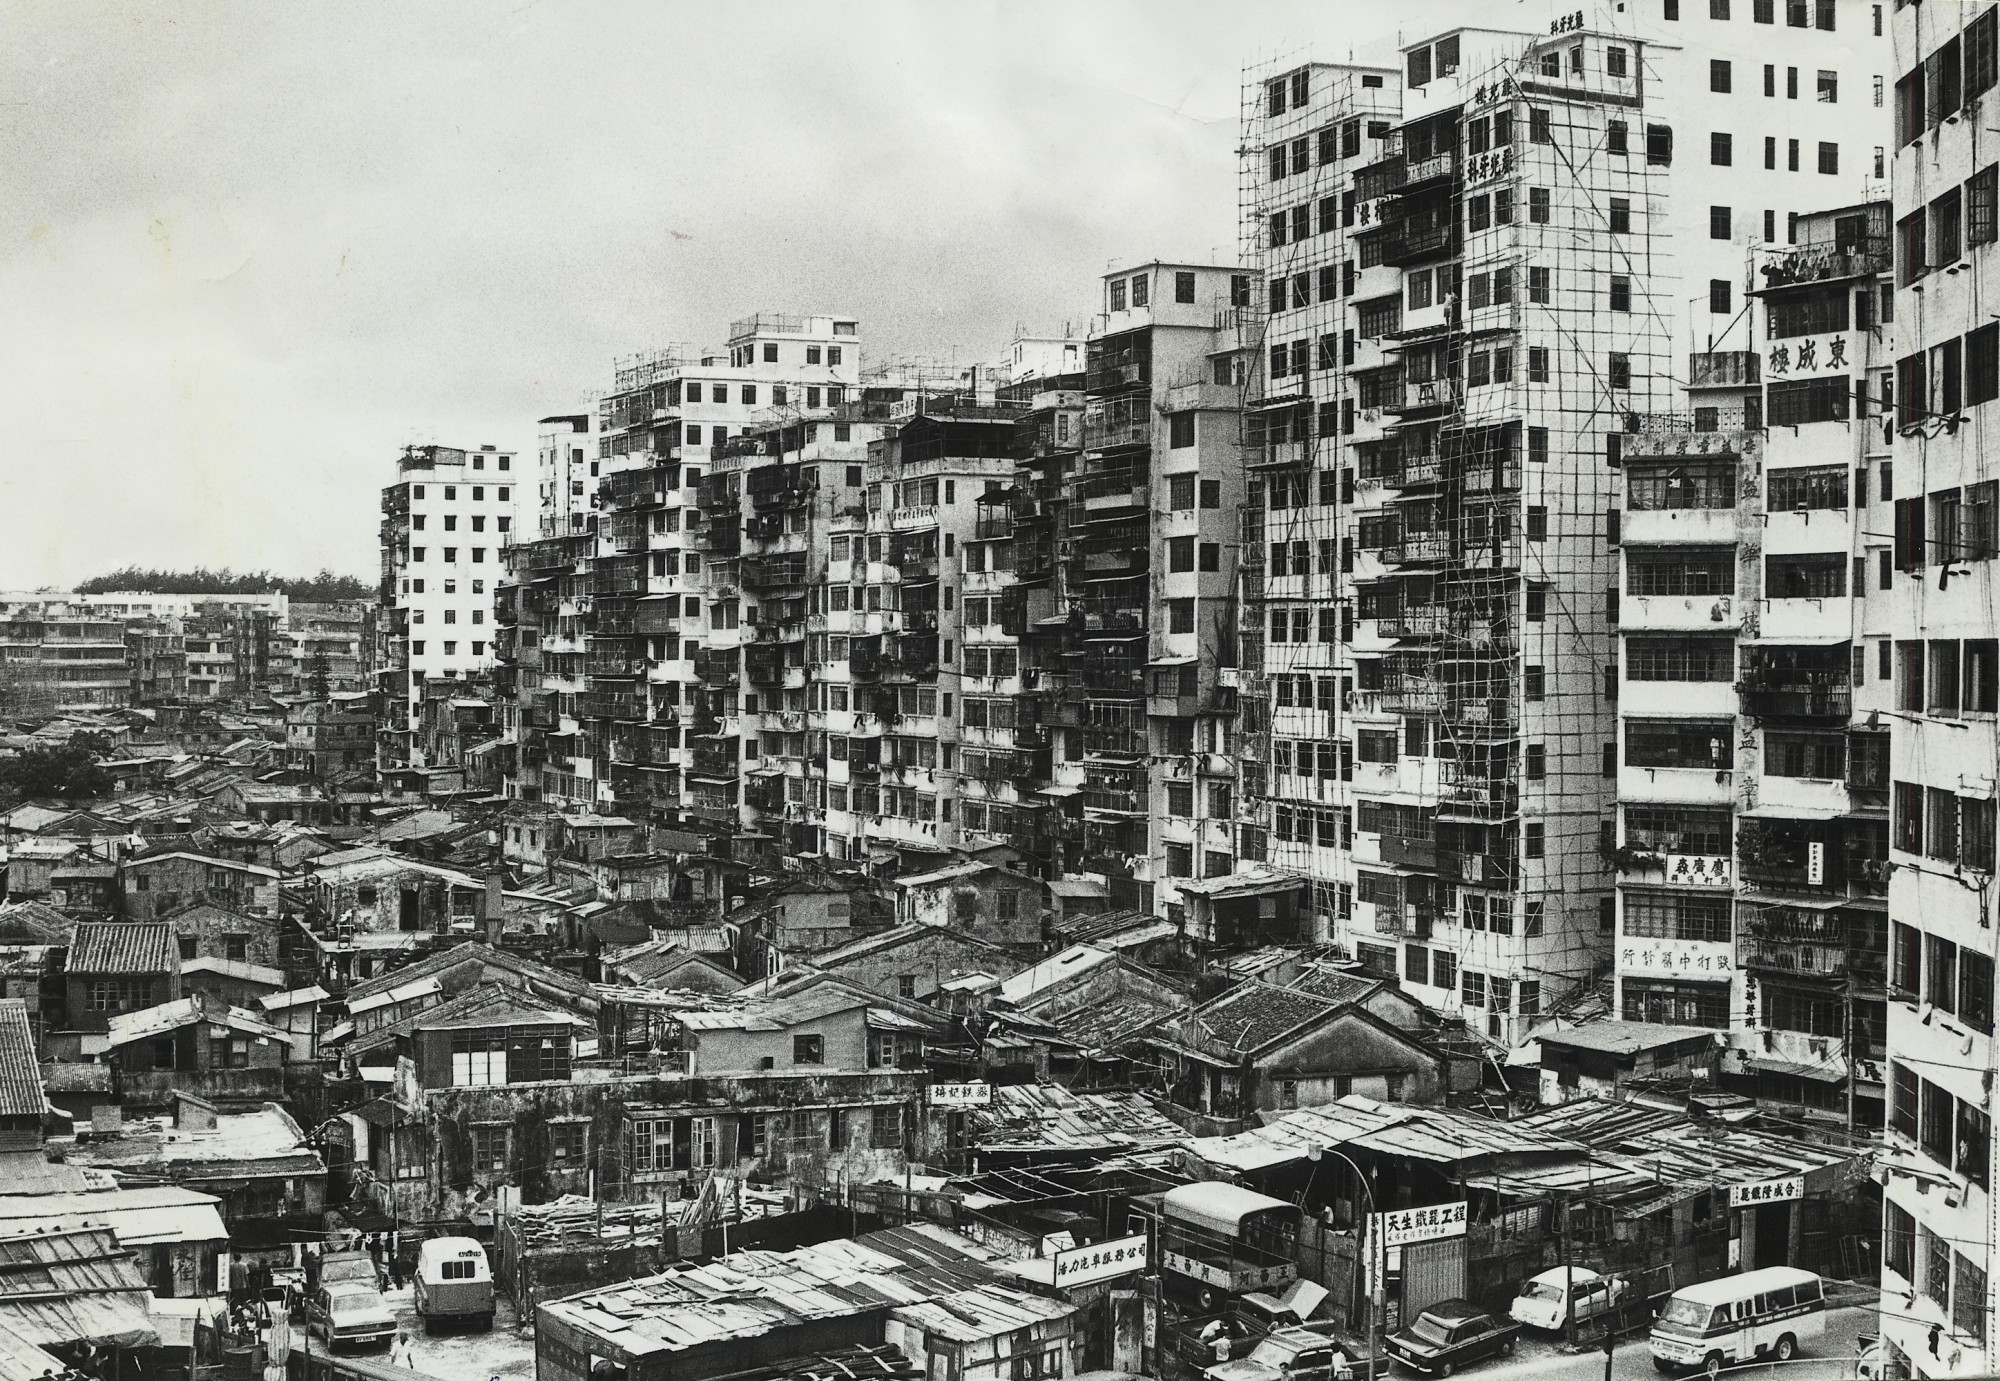 Südseite der Kowloon Walled City um 1975